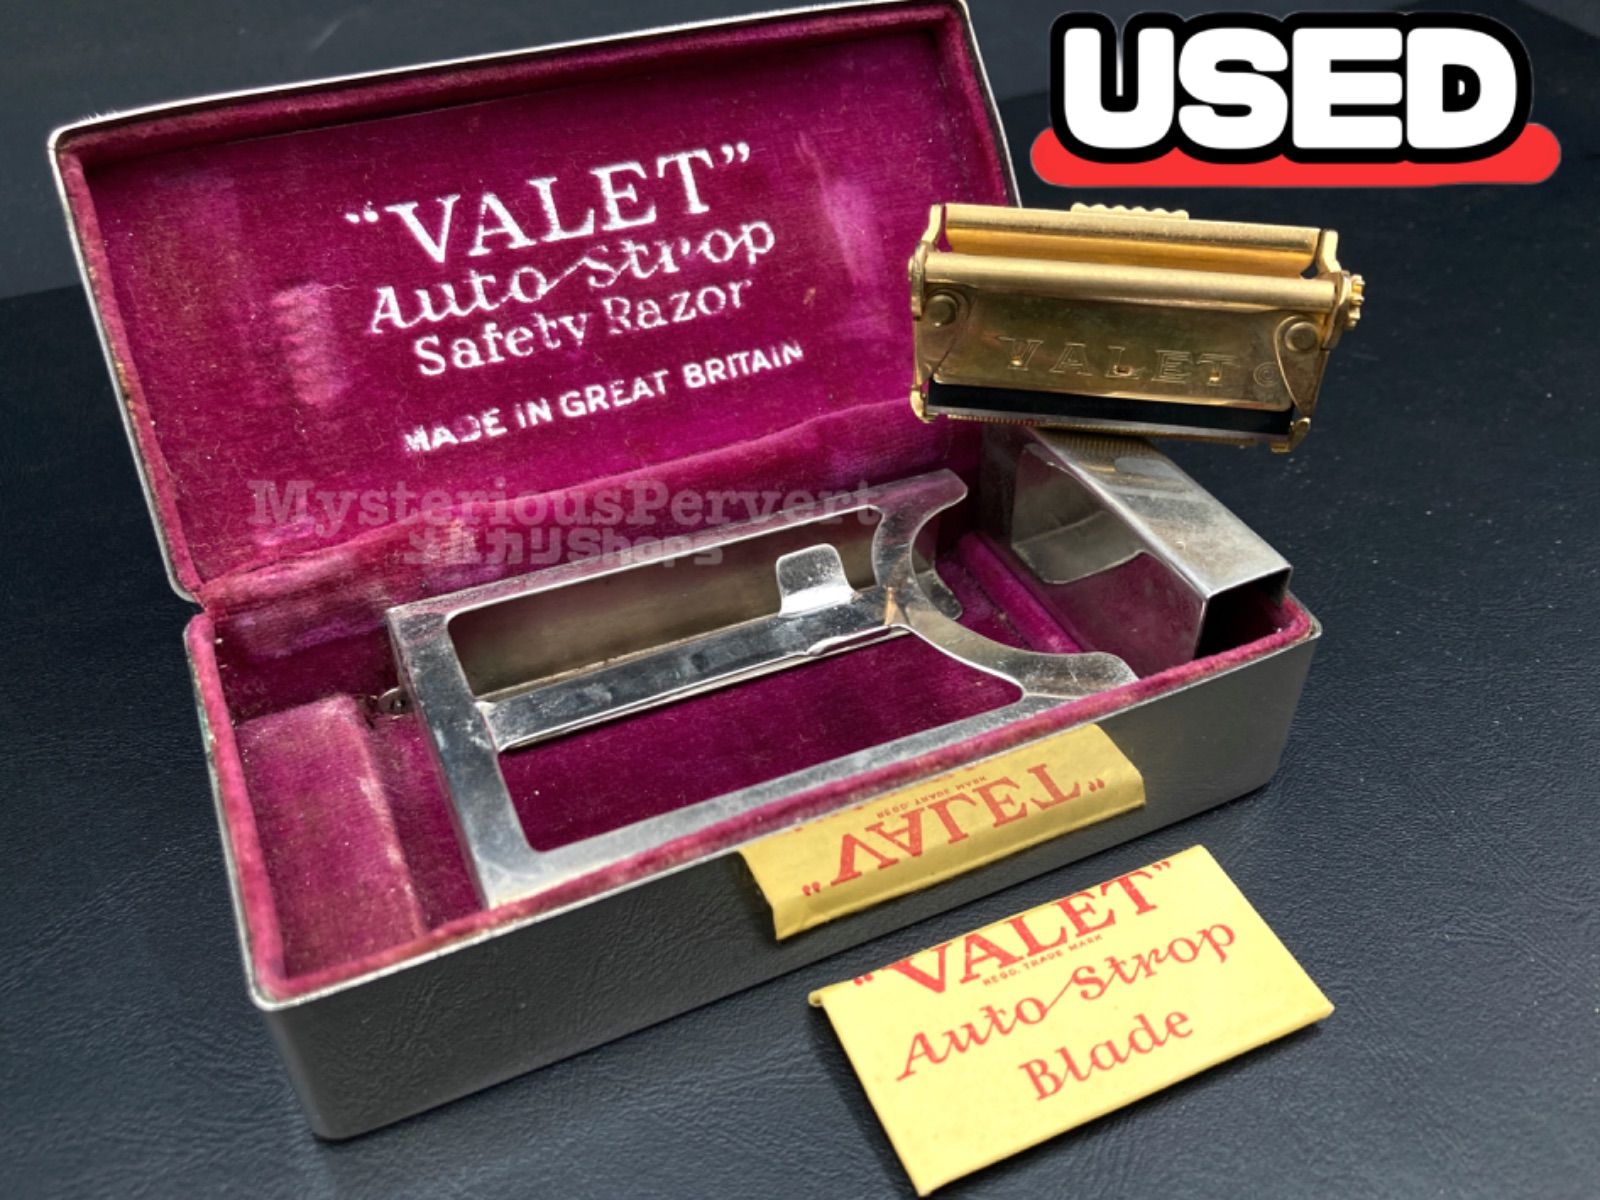 MZ257) VALET Auto Strop Safty Razor Vintage 片刃カミソリホルダー